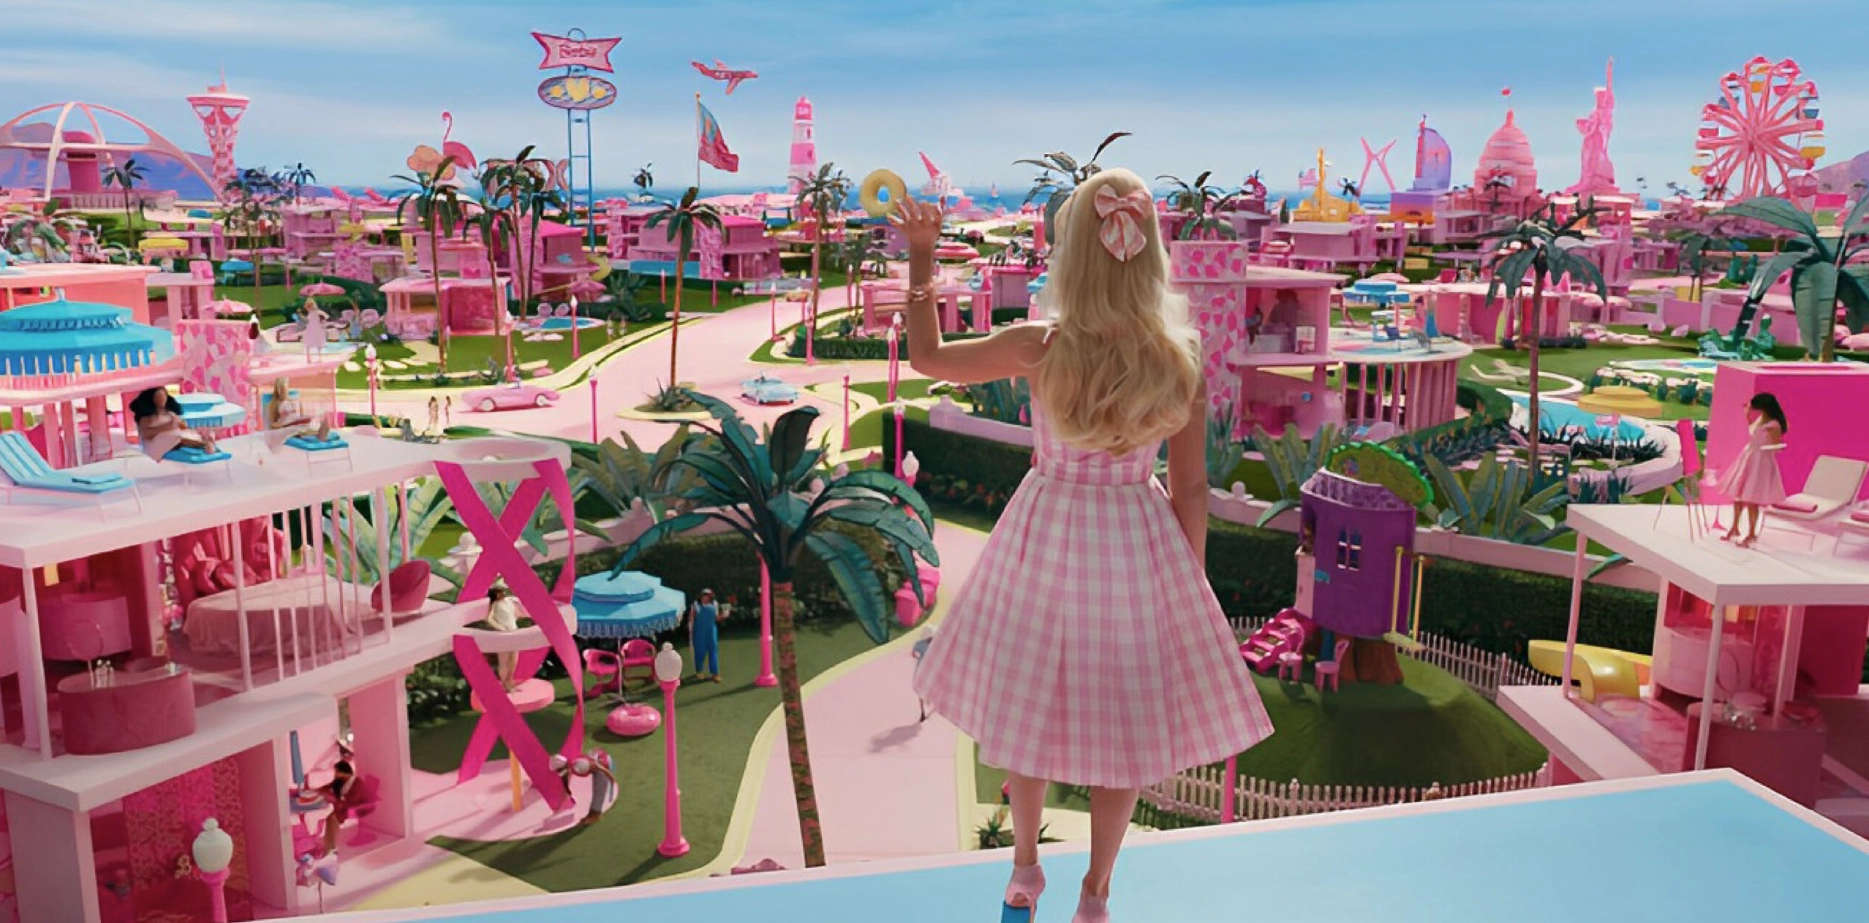 รีวิวหนัง Barbie - ย้อนวันวานความทรงจำในวัยเด็ก กับบาร์บี้ฉบับไลฟ์แอคชั่น